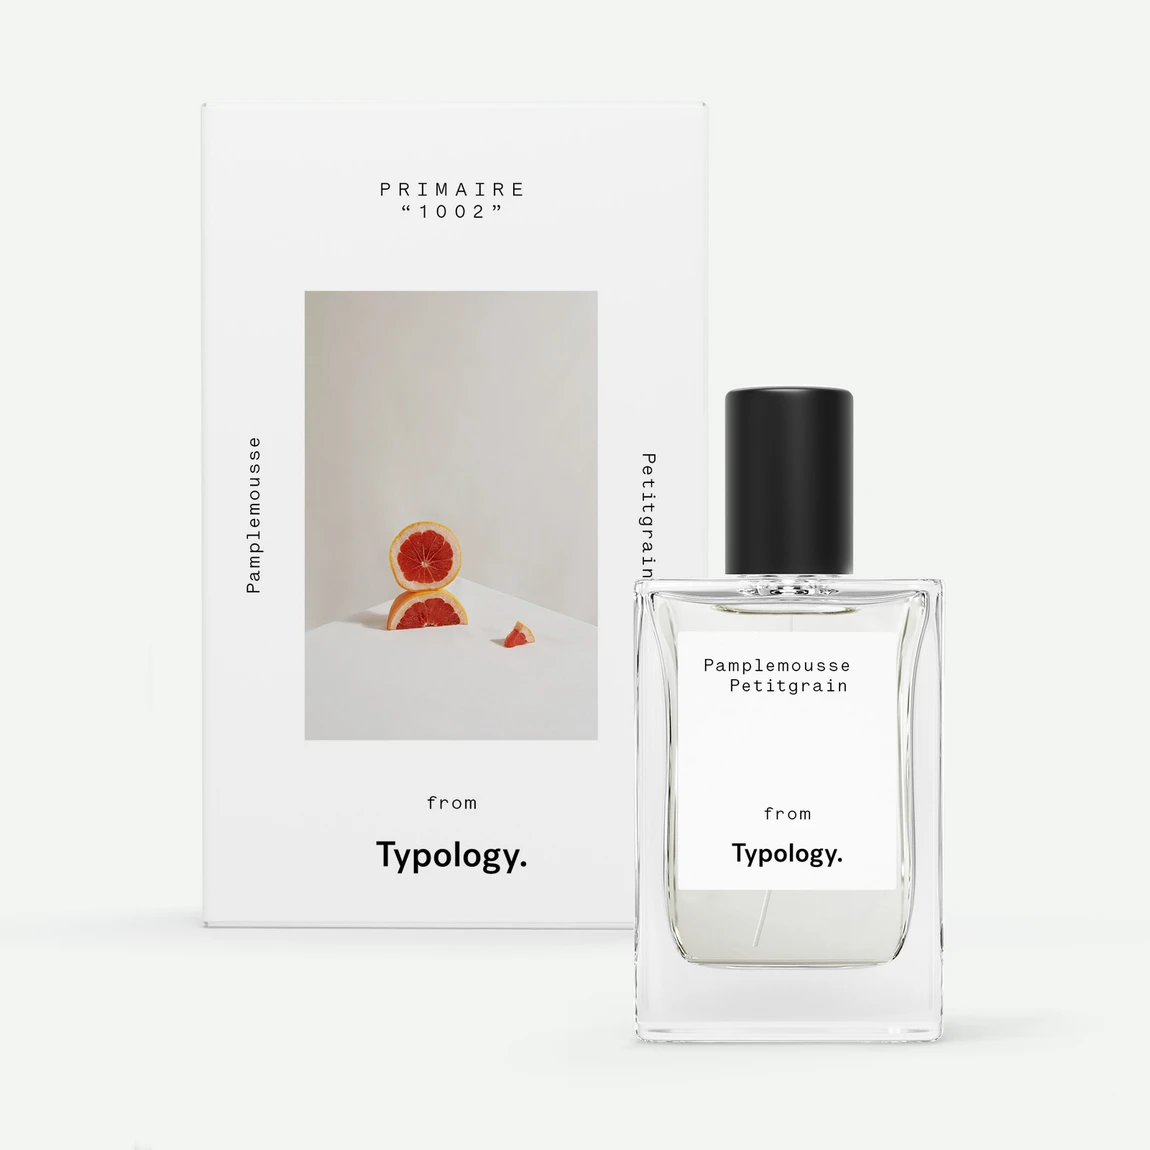 Parfum Typologie Pamplemousse et Petitgrain avec son emballage, arrière fond blanc